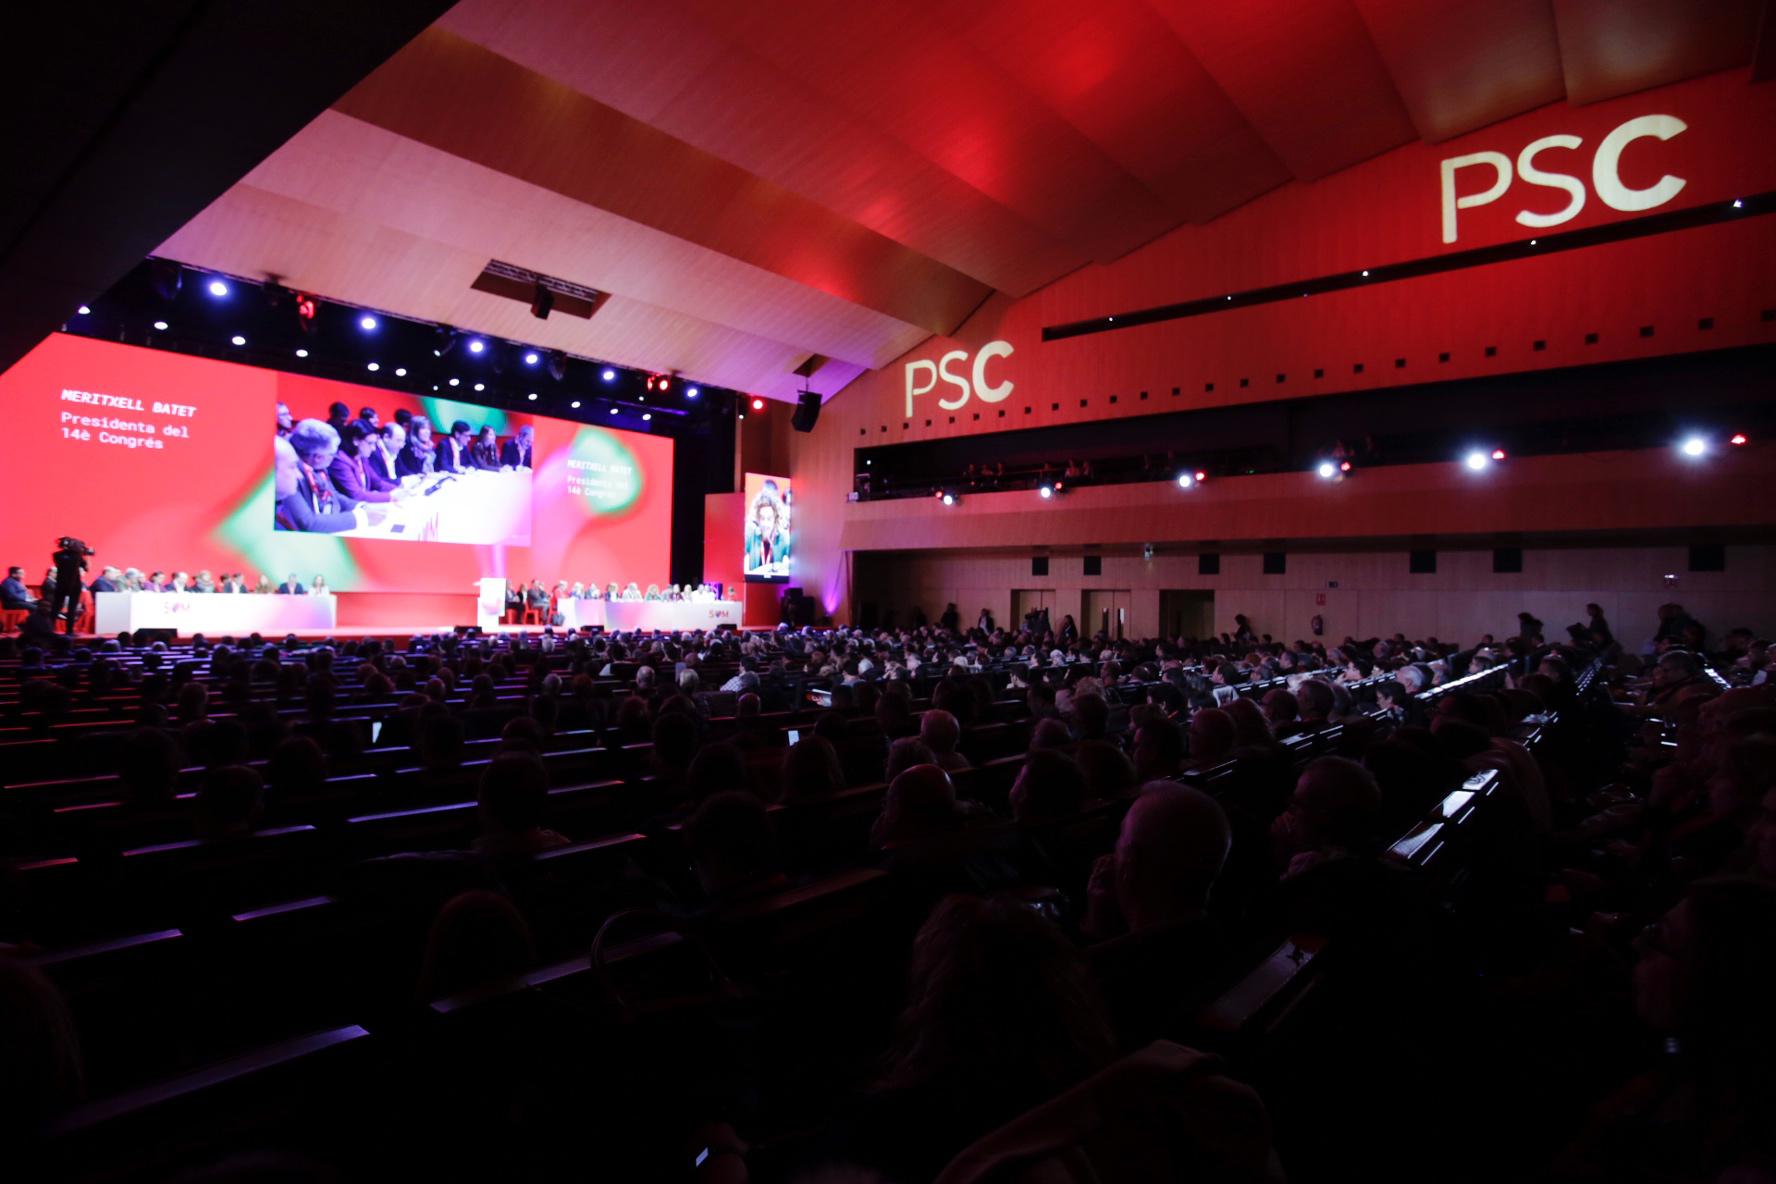 ERC prevé declinar la invitación al congreso del PSC: "Les deseamos suerte"